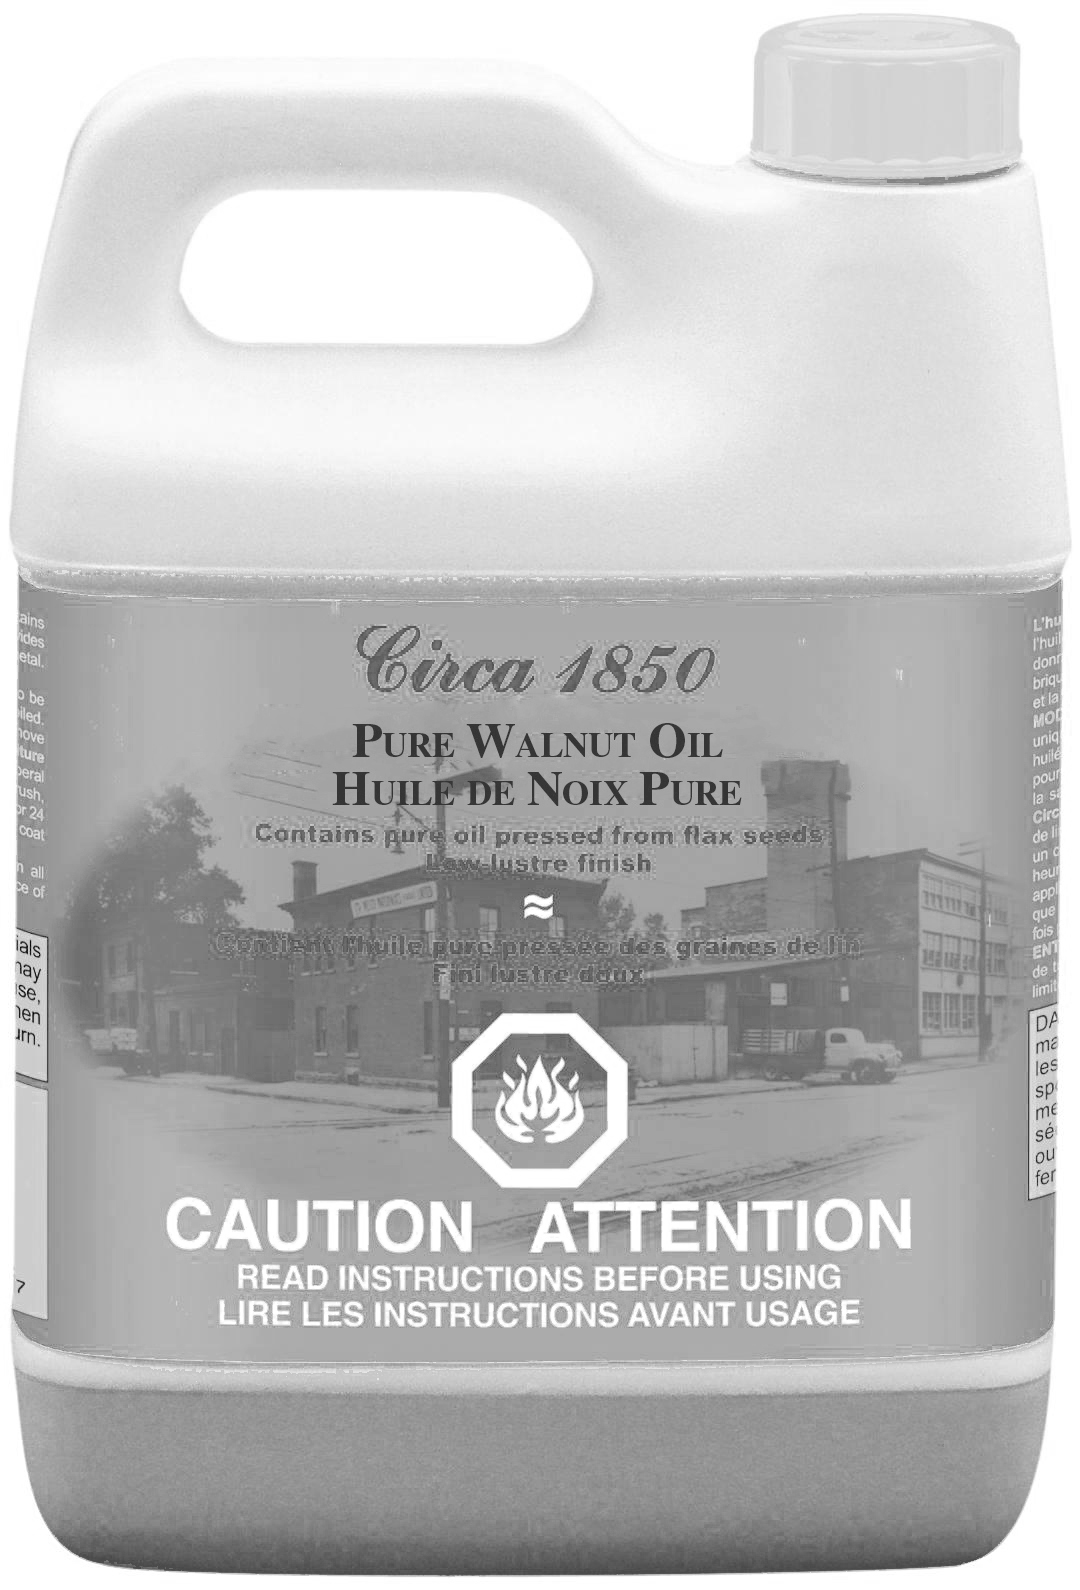 Circa 1850 Pure Walnut Oil